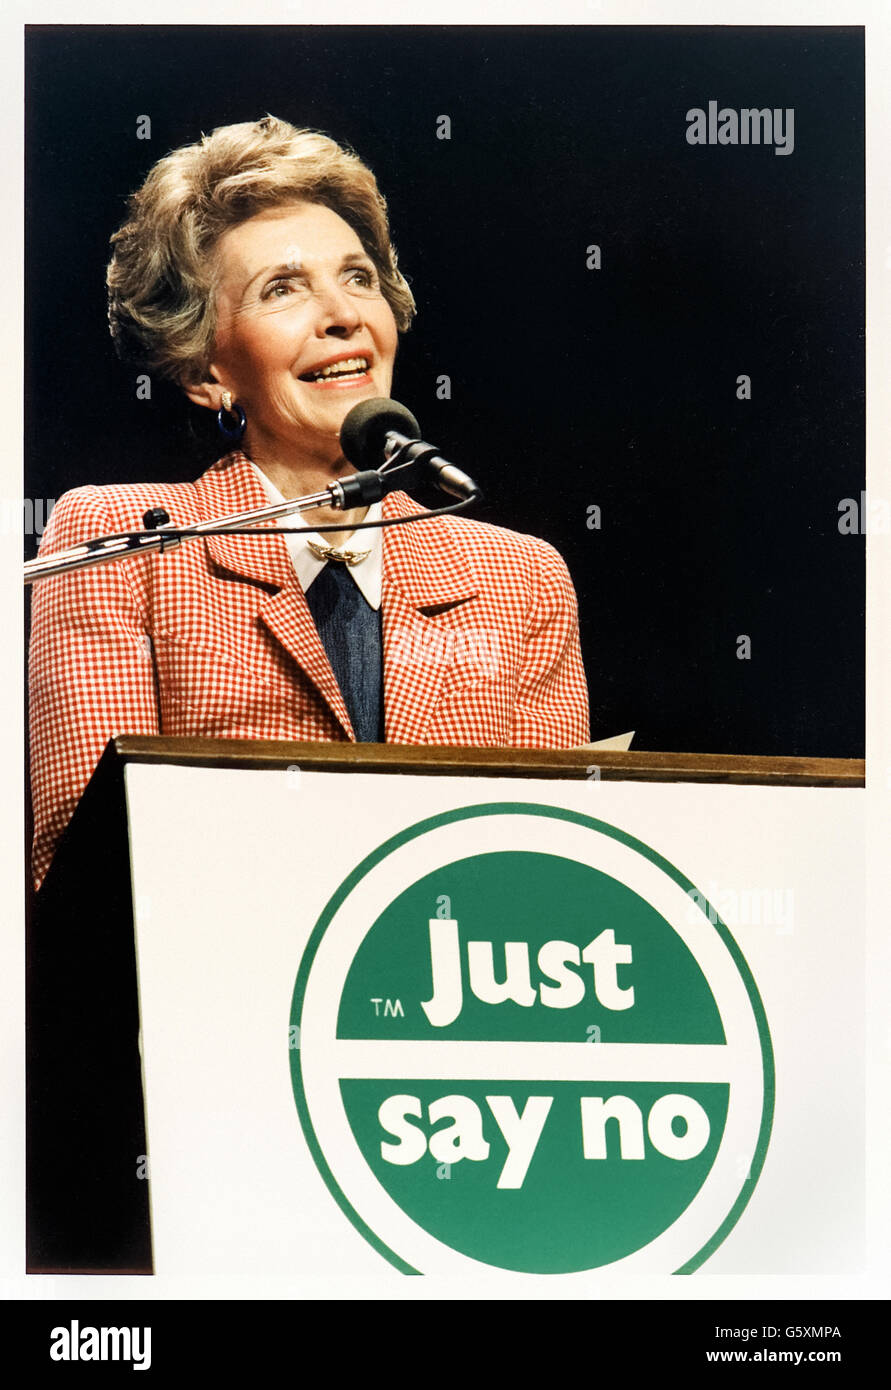 "Just Say No" Anti-Drogen-Kampagne, dem Motto wurde erstellt und von First Lady Nancy Reagan gezeigt hier eine Rede während einer Kundgebung in Los Angeles, Kalifornien am 13. Mai 1987 während einer nationalen "Just Say No" Woche verfochten. Siehe Beschreibung für mehr Informationen. Stockfoto